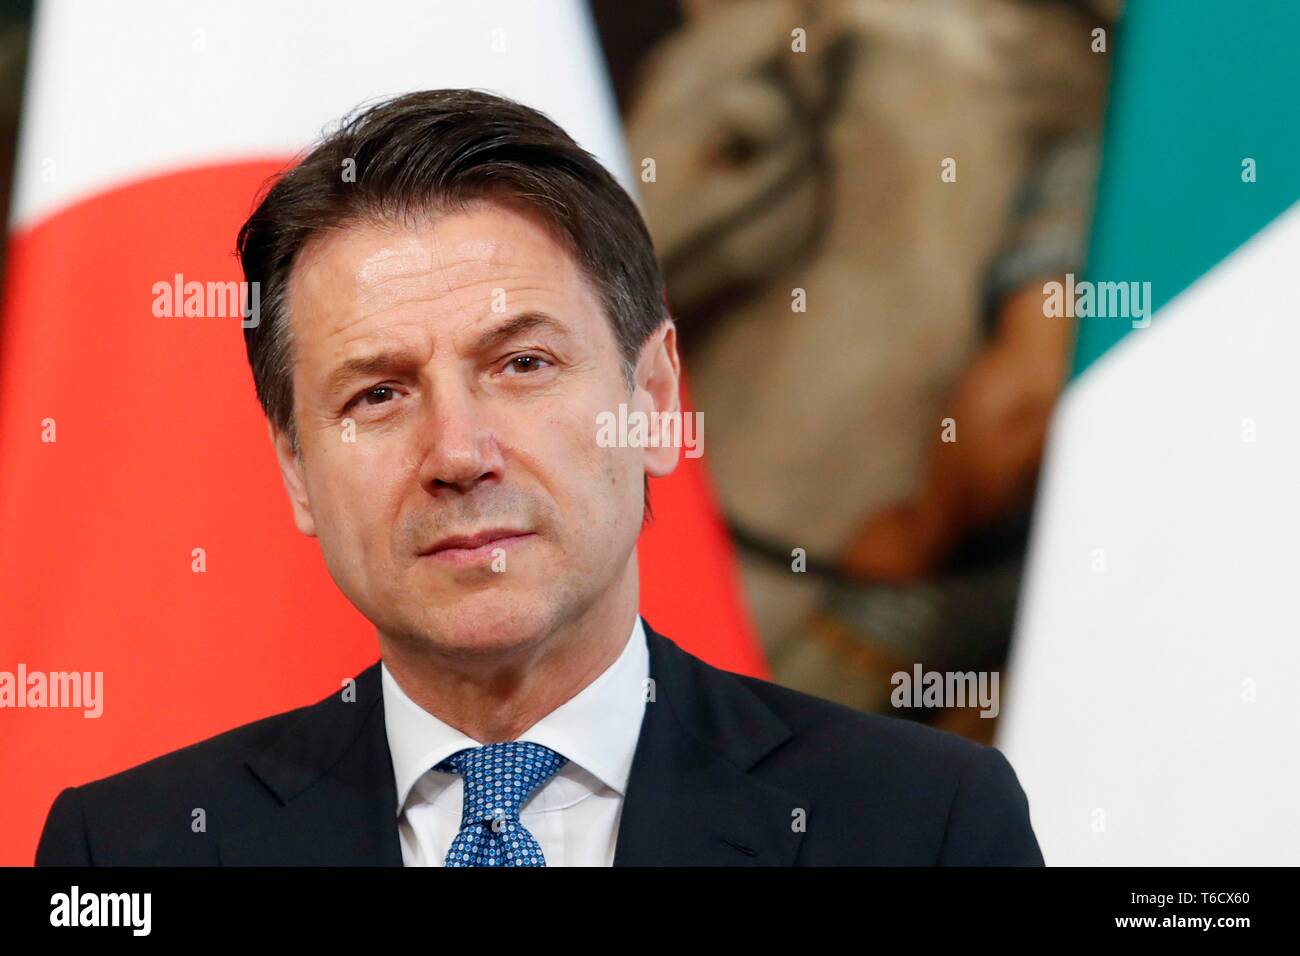 Italien, Rom, 24. April 2019: Italienische premier Giuseppe Conte während einer Pressekonferenz im Palazzo Chigi, Hauptsitz der Regierung Foto Remo Casi Stockfoto